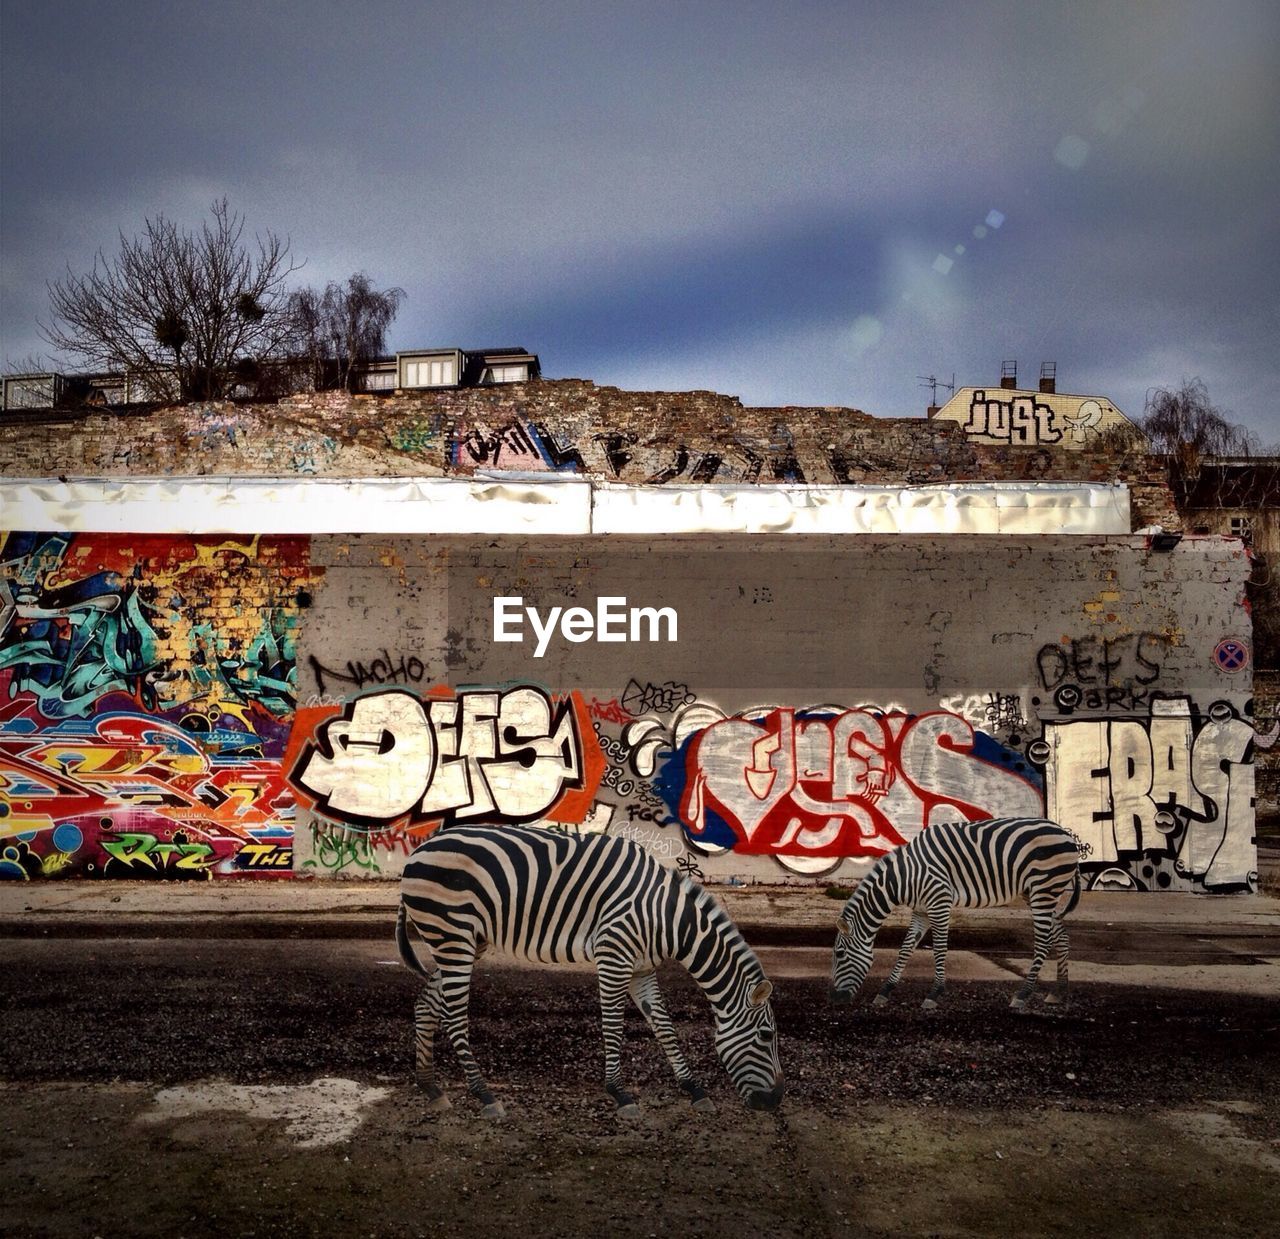 Zebra sculptures by graffiti wall